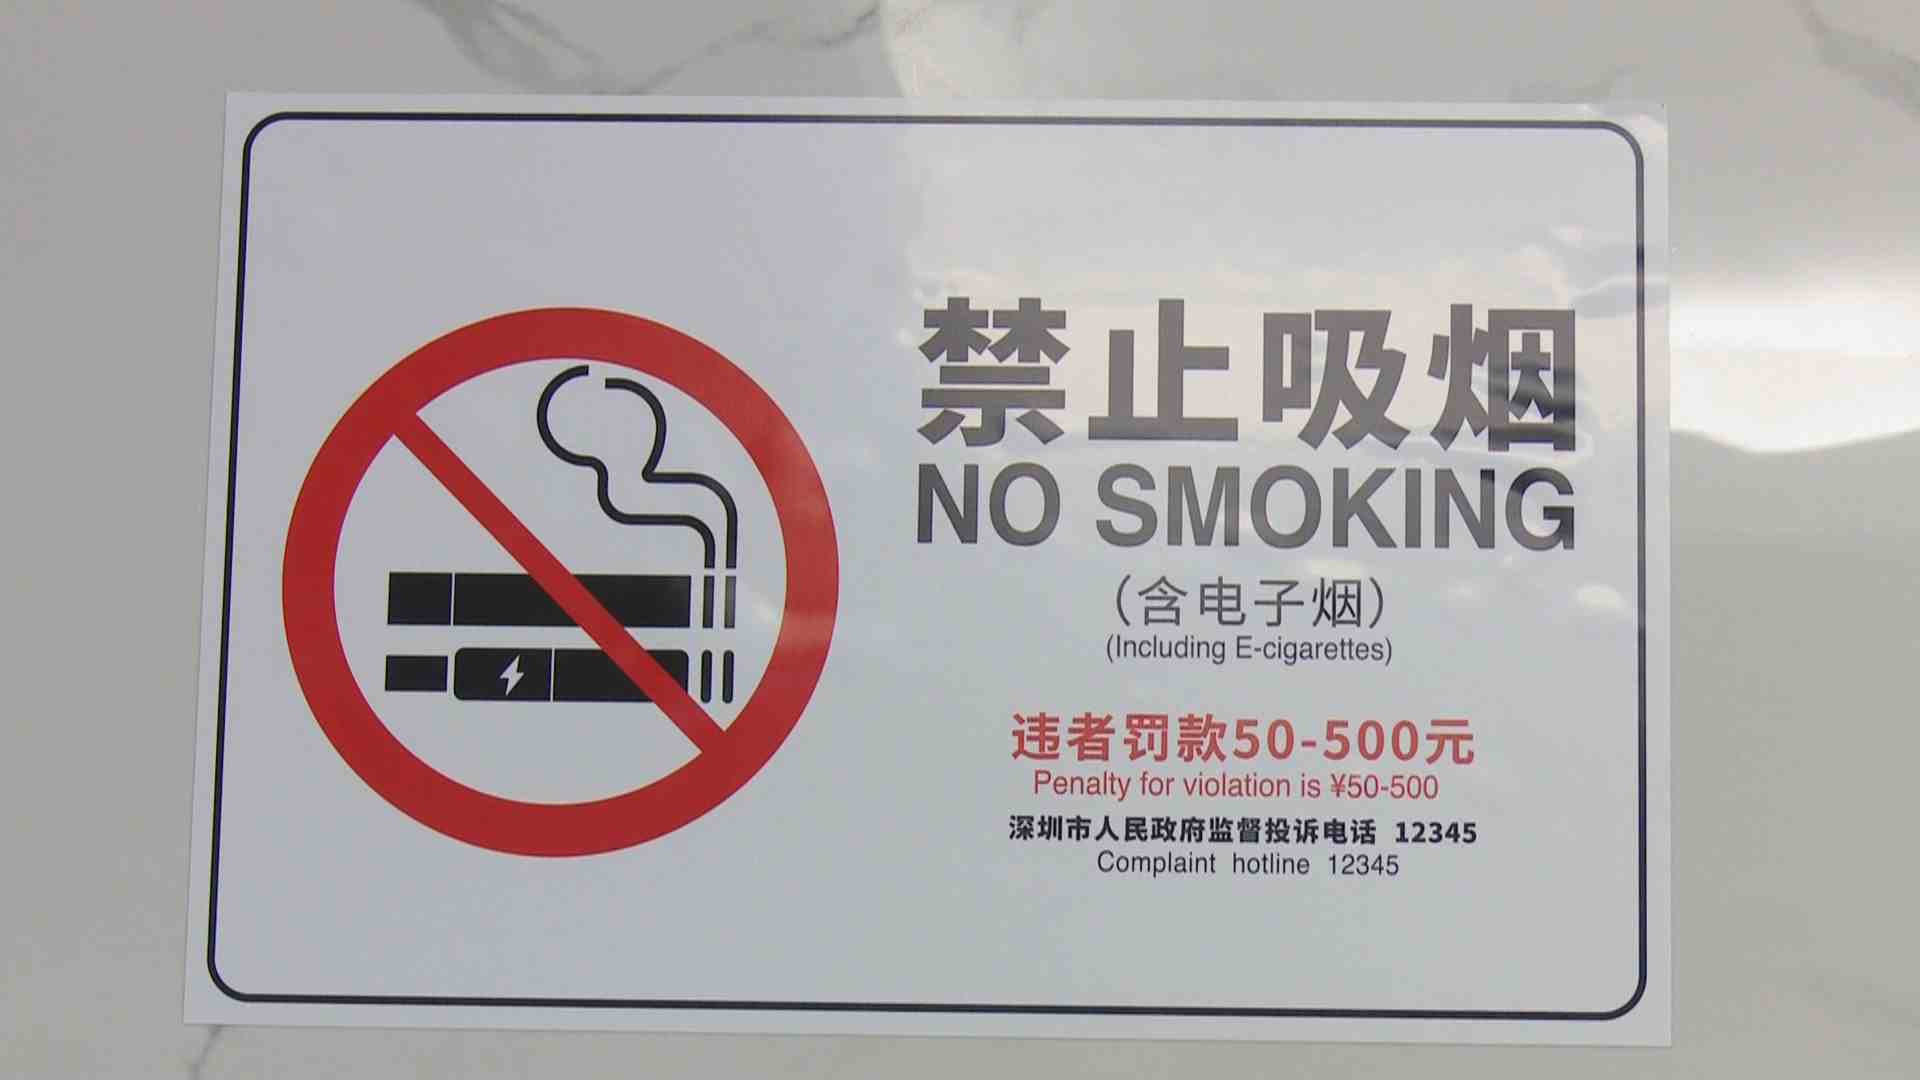 全国首创!深圳控烟标识涵盖"电子烟"